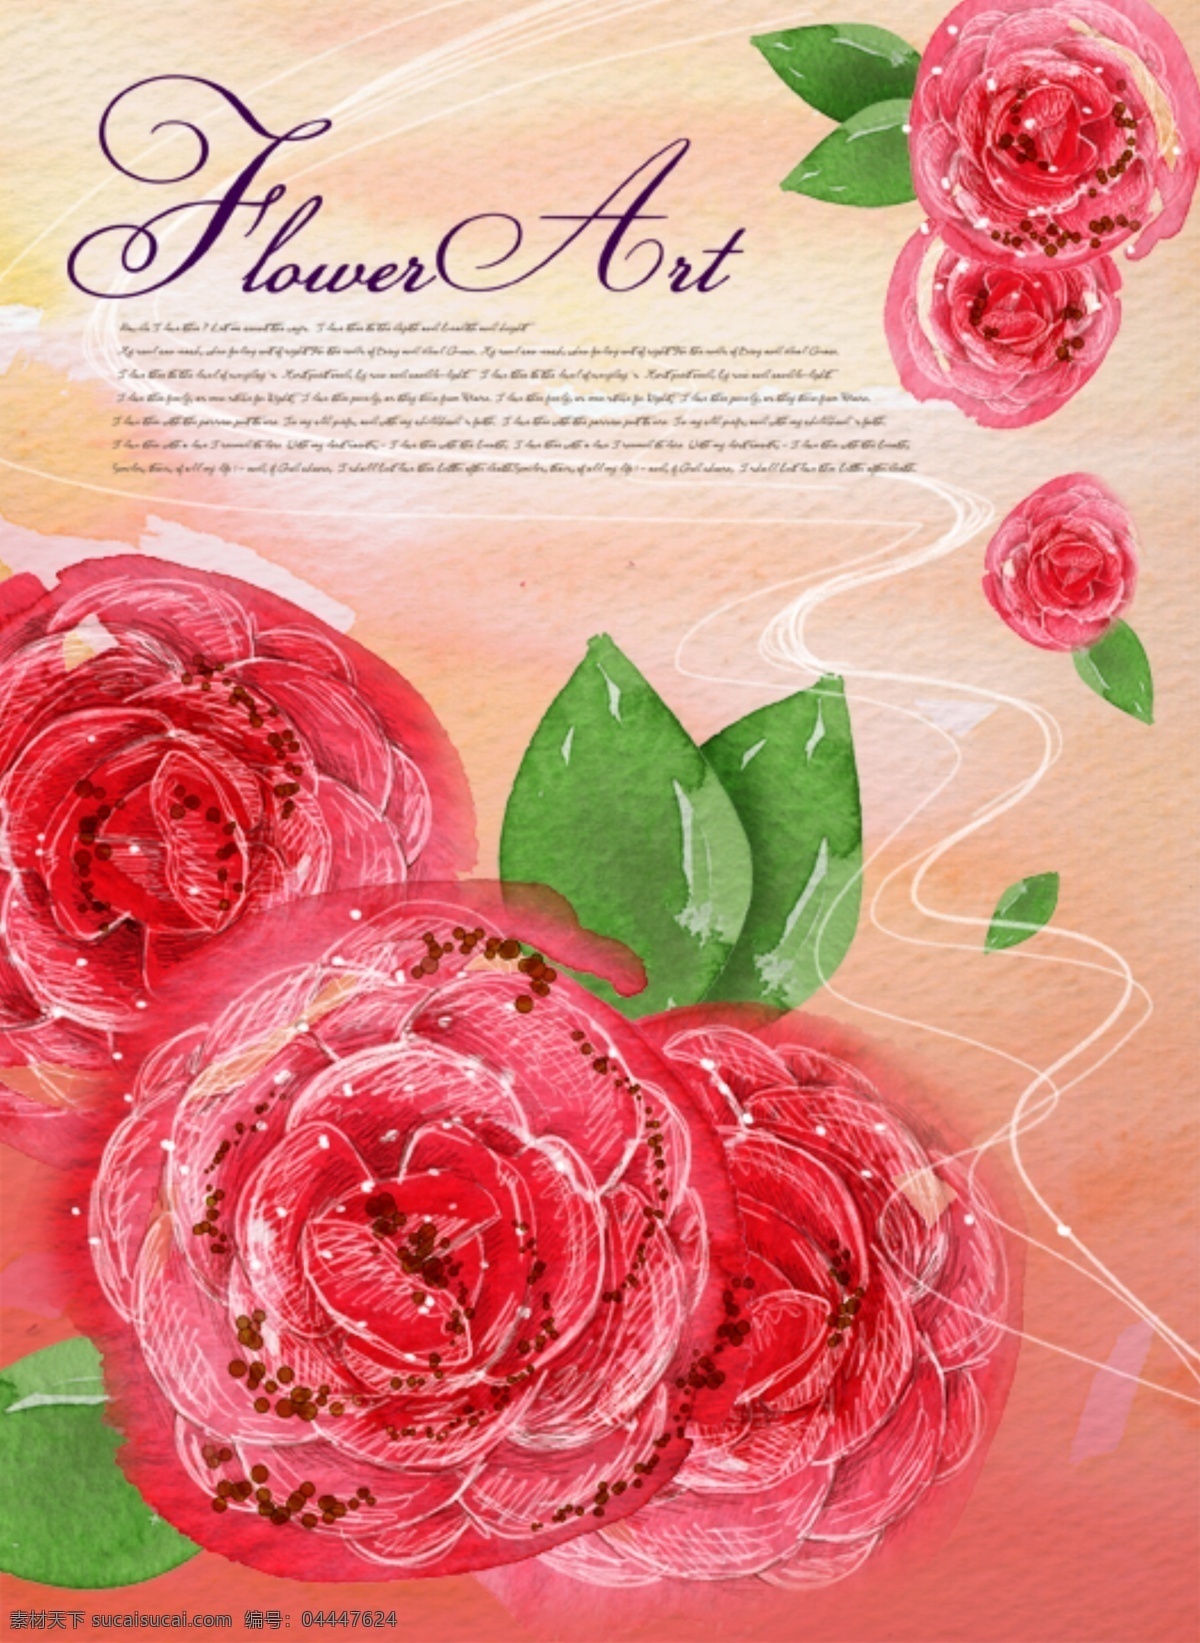 纹样 背景 图案 文字 排版图片 排版 样式 花 玫瑰 浪漫 分层 背景素材